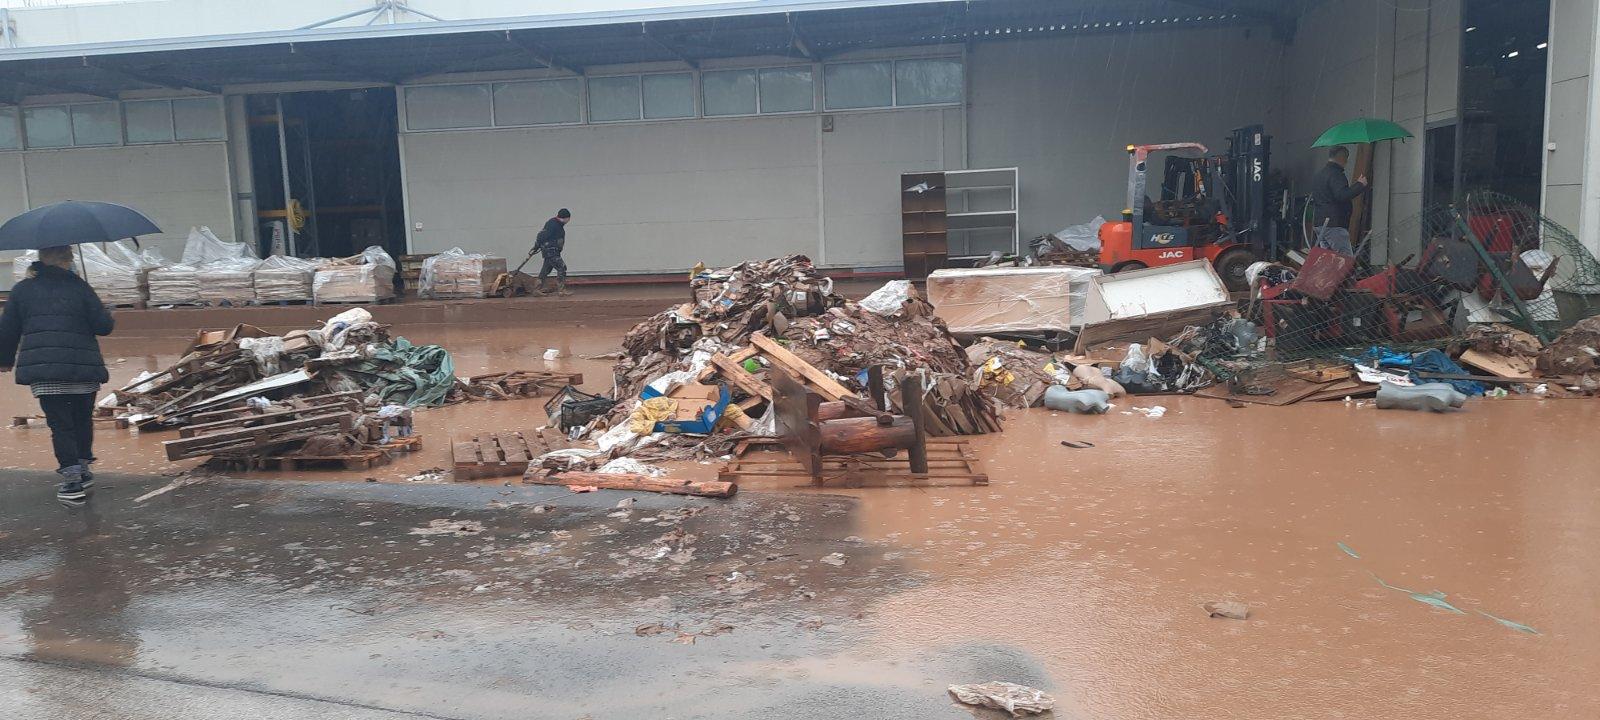 Sanitarni inspektori KUIP-a utvrđuju činjenično stanje u skladištima u Rajlovcu